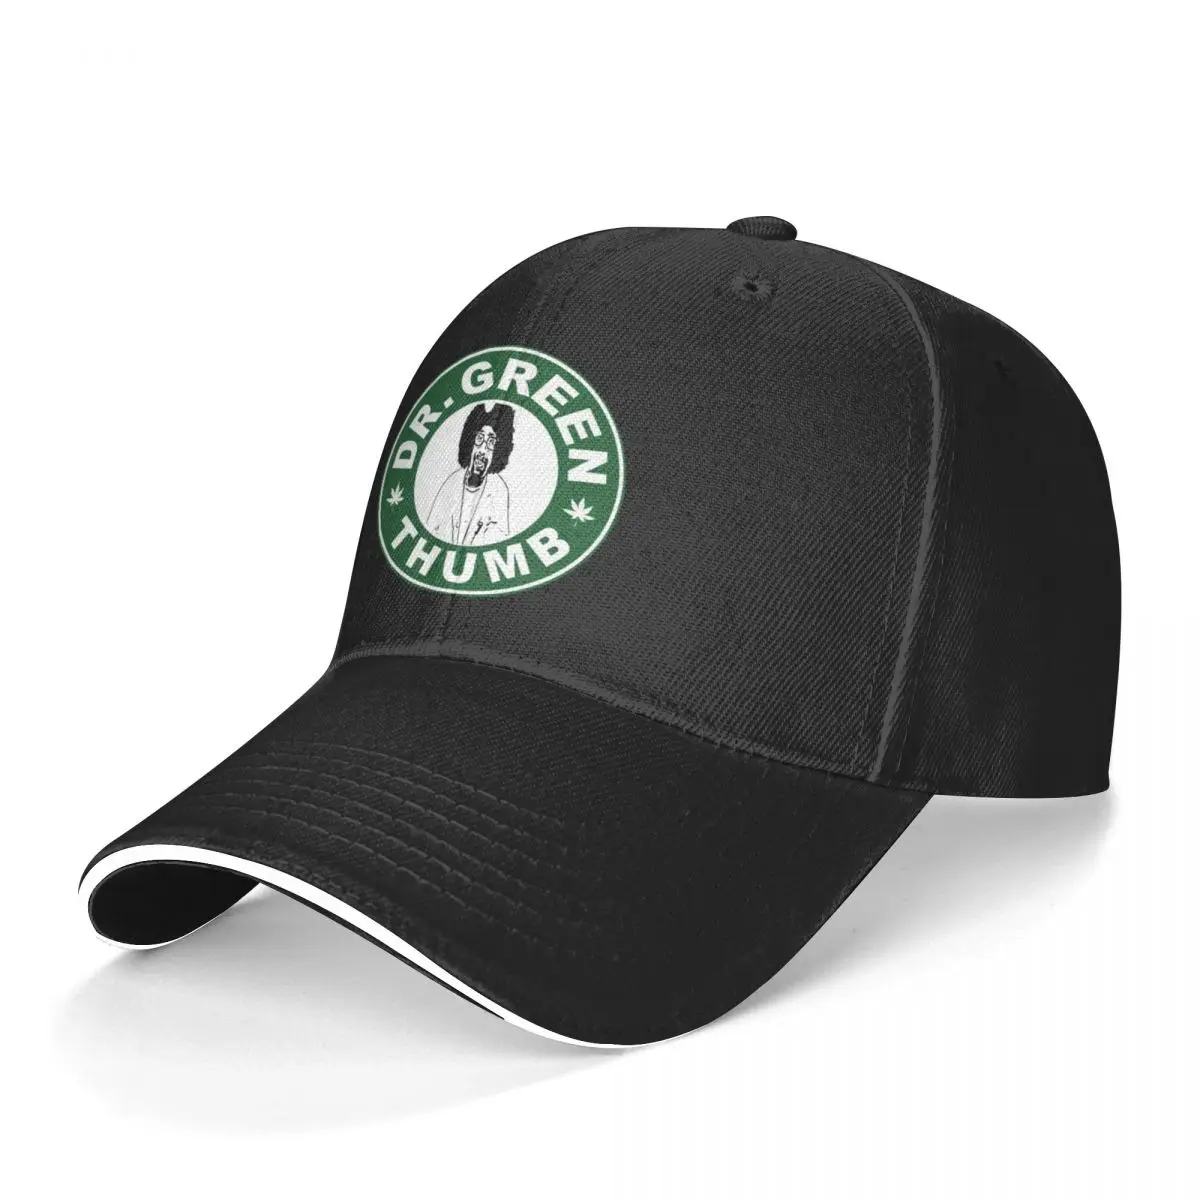 Cypress Hill Baseball Cap Dr Green THumb Sports Adjustable Hip Hop Hats Cool Print Men Women Baseball Caps